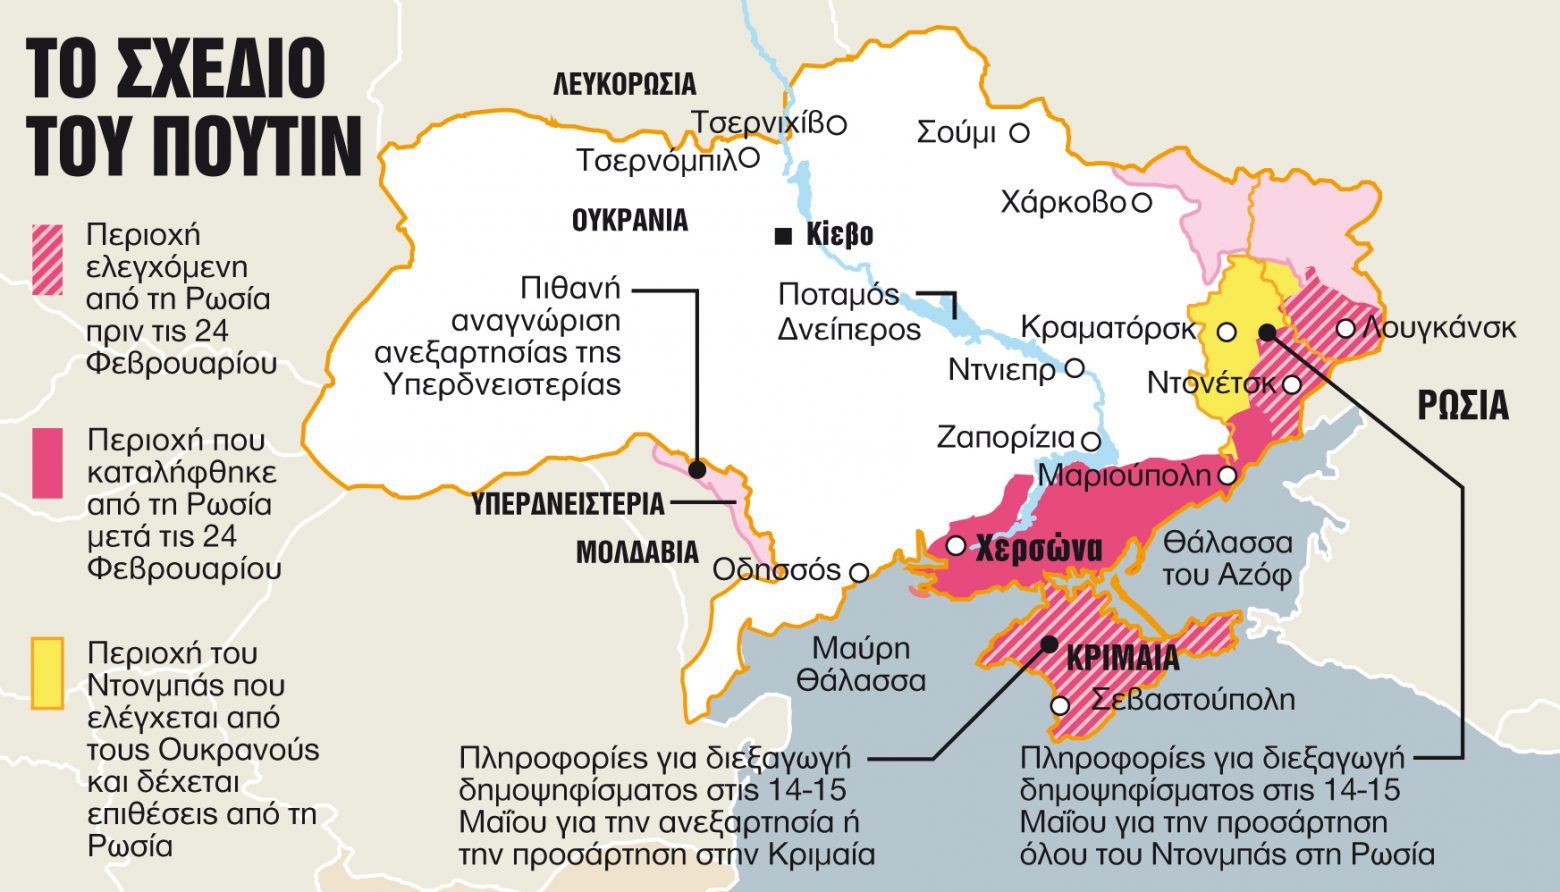 Σχέδια για διαμελισμό της Ουκρανίας με δημοψηφίσματα